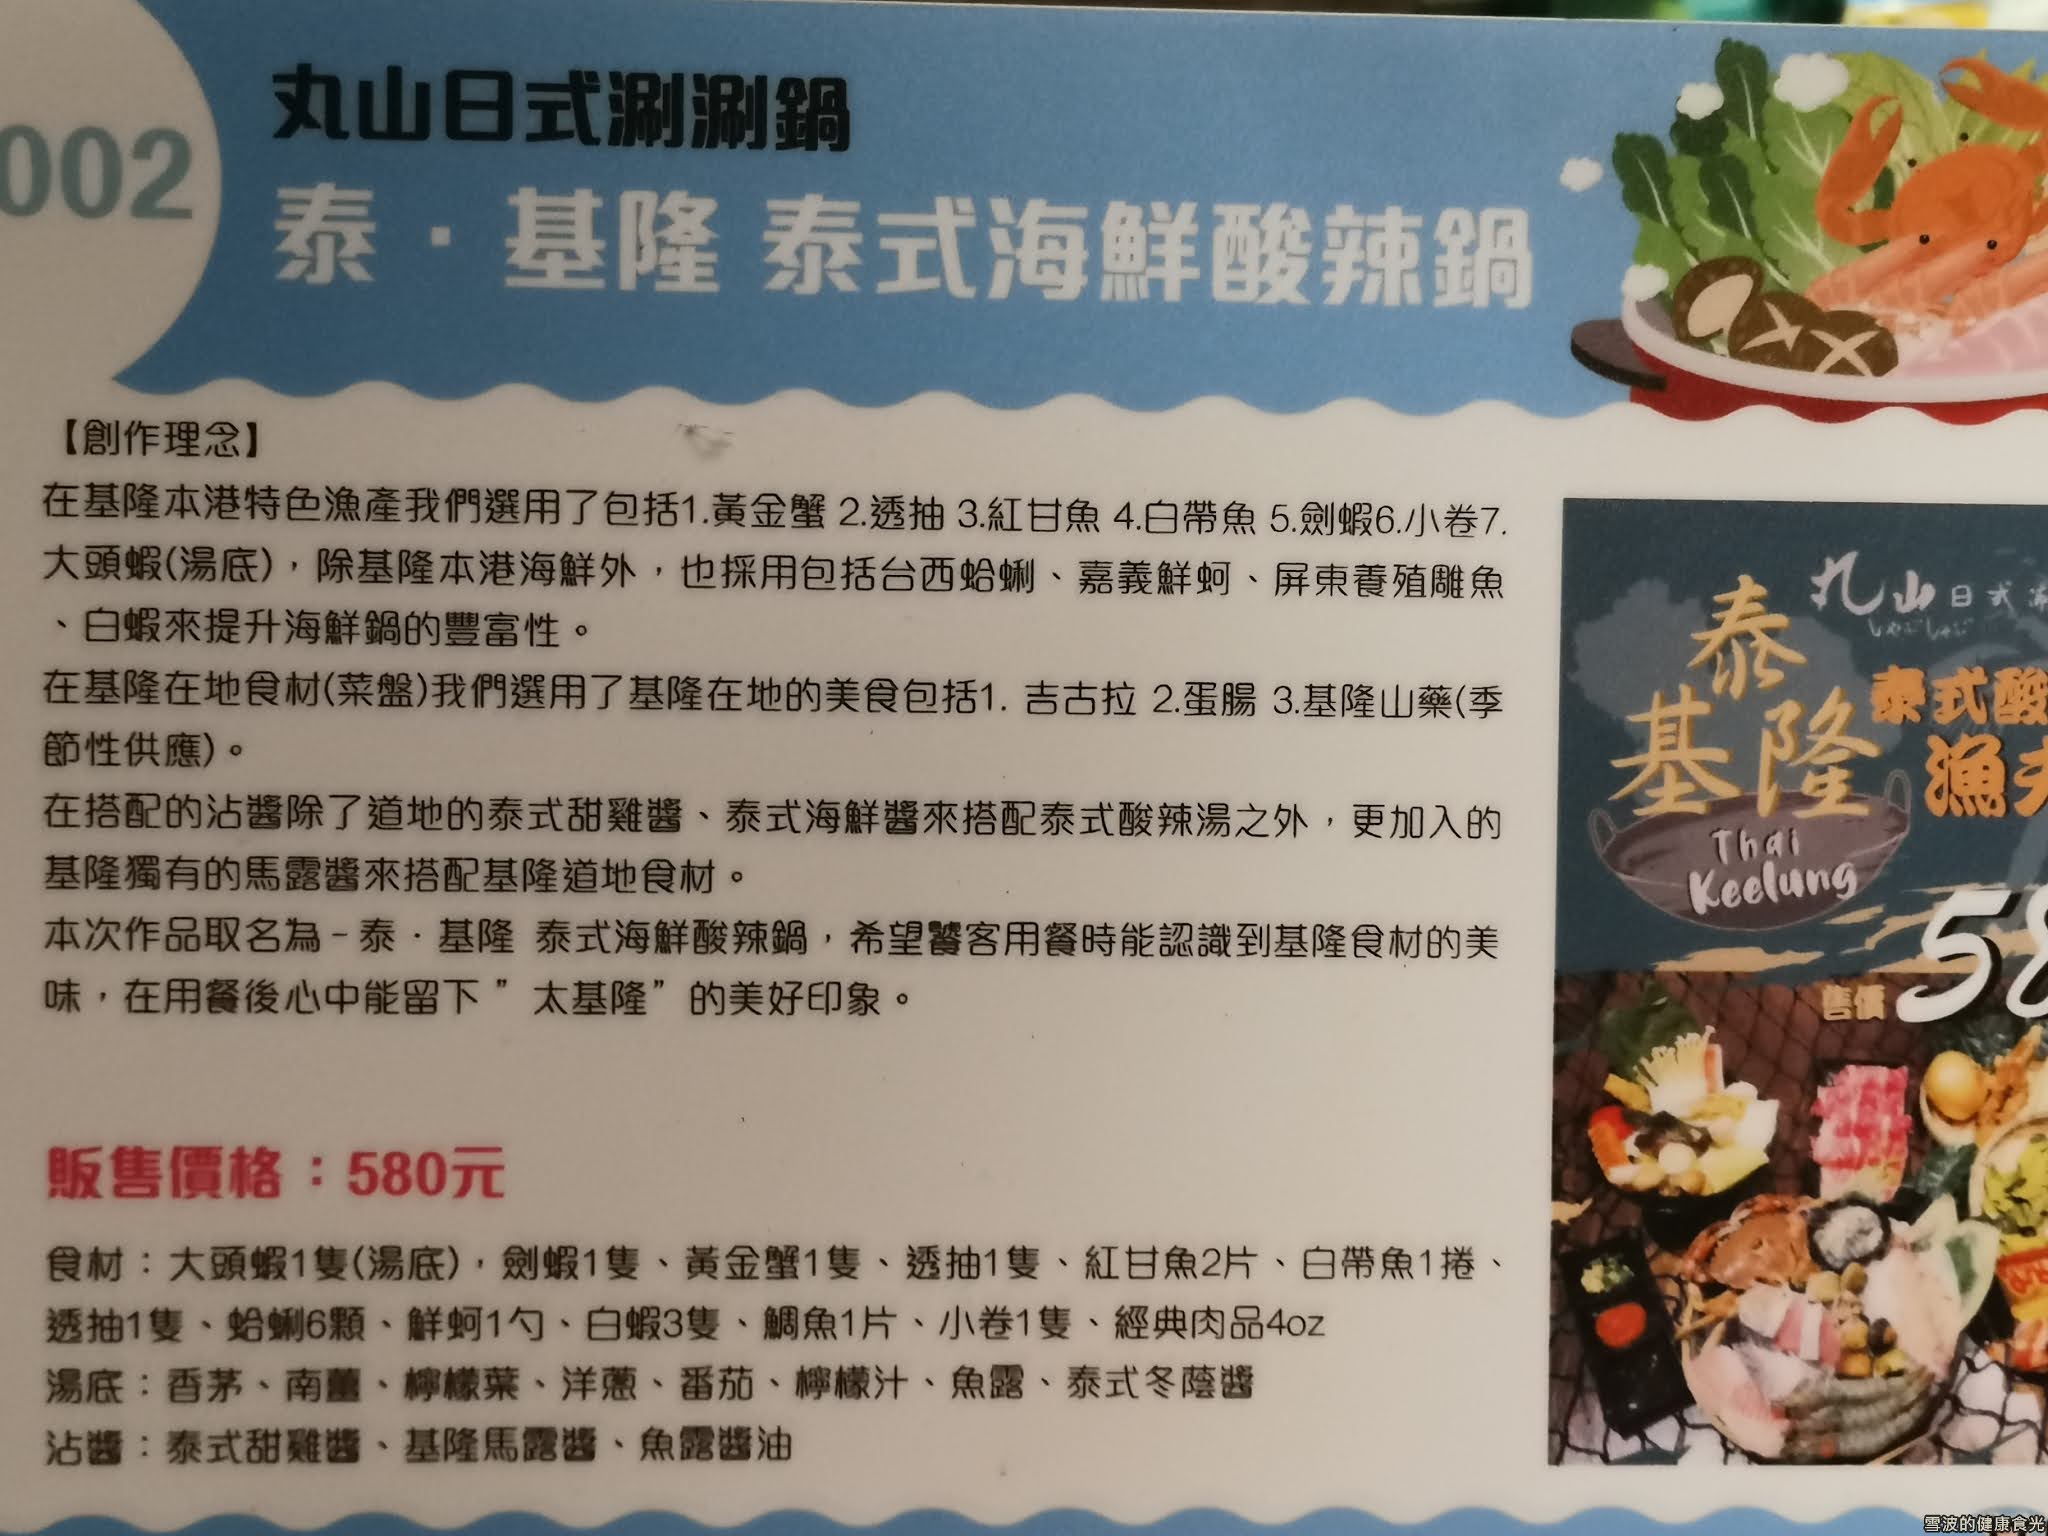 丸山日式涮涮鍋-基隆店